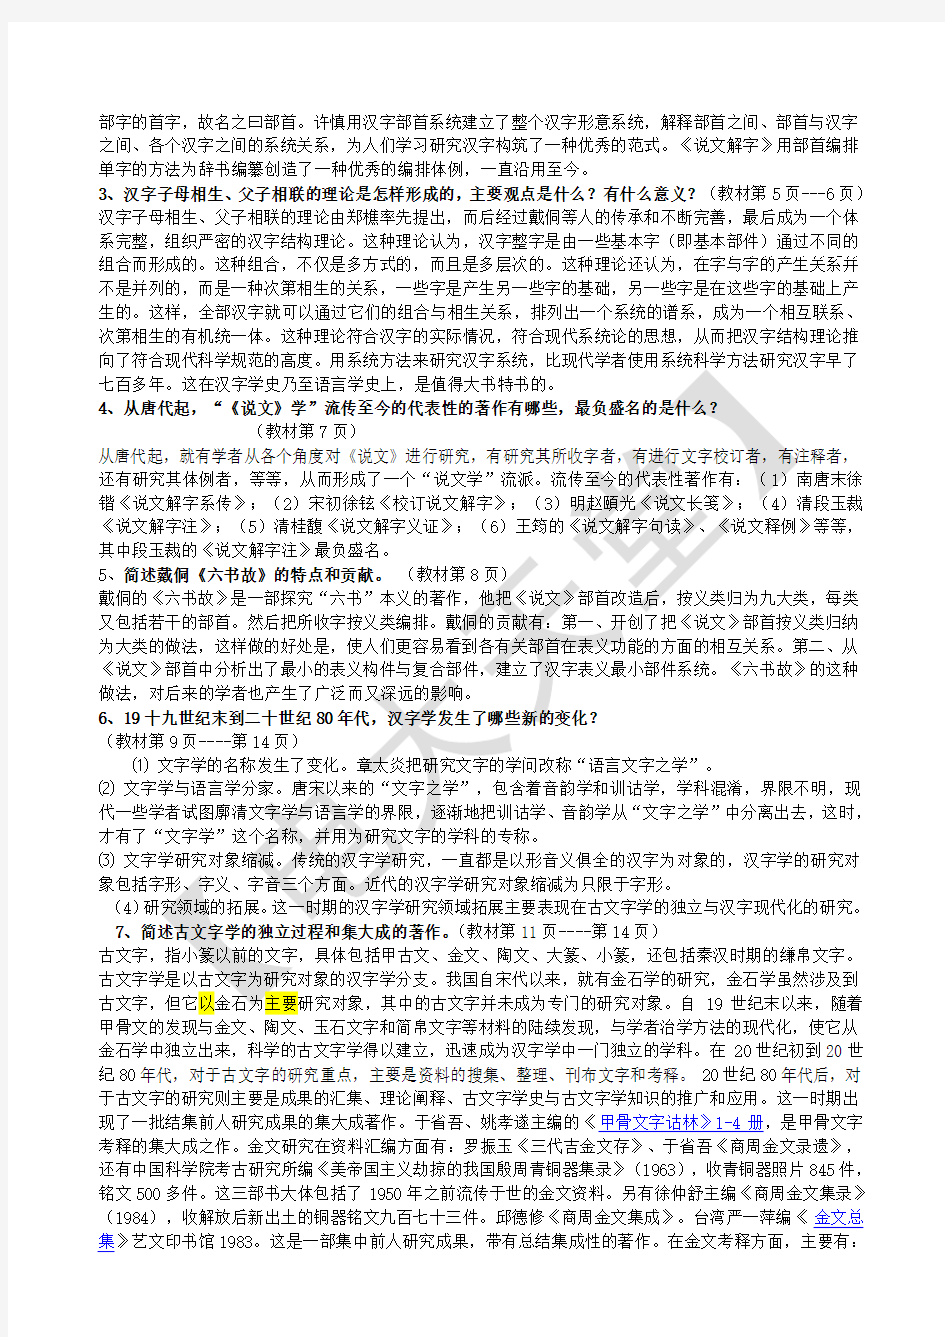 电大-古代汉语-专题形成性考核册作业答案